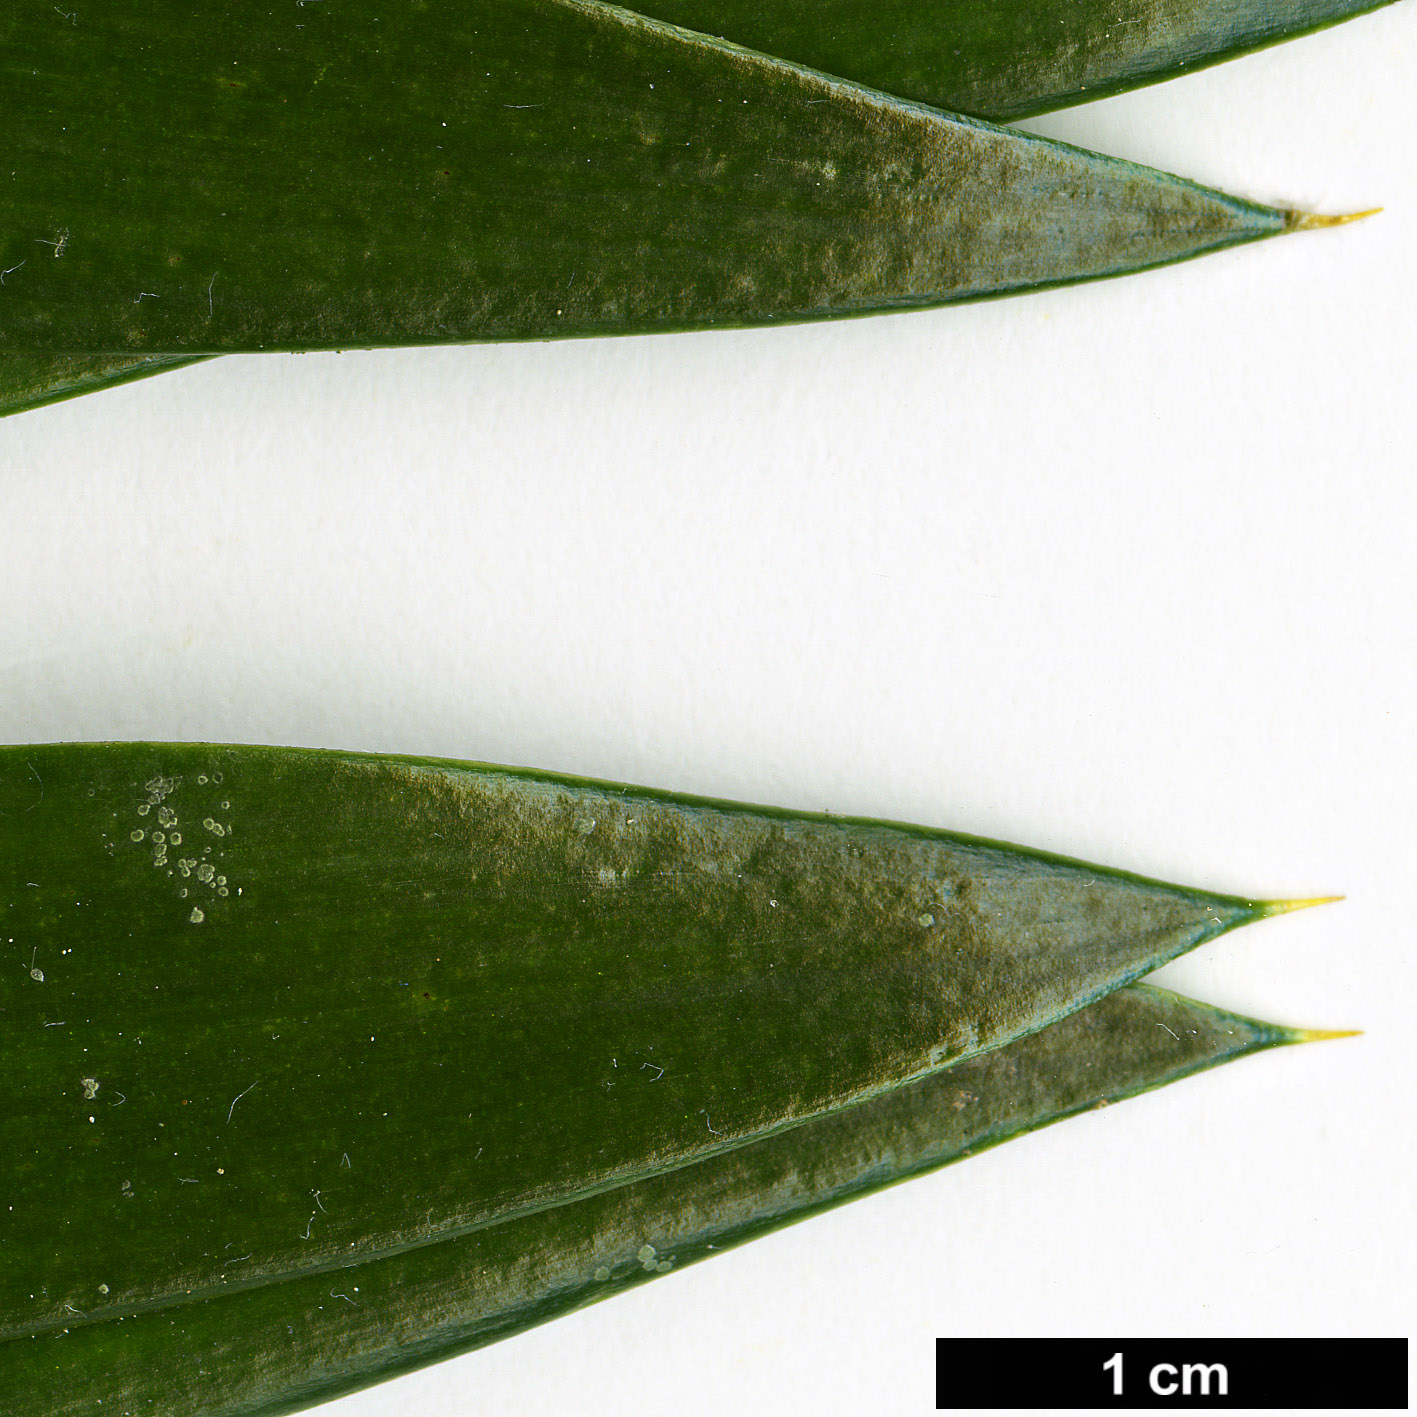 High resolution image: Family: Araucariaceae - Genus: Araucaria - Taxon: hunsteinii